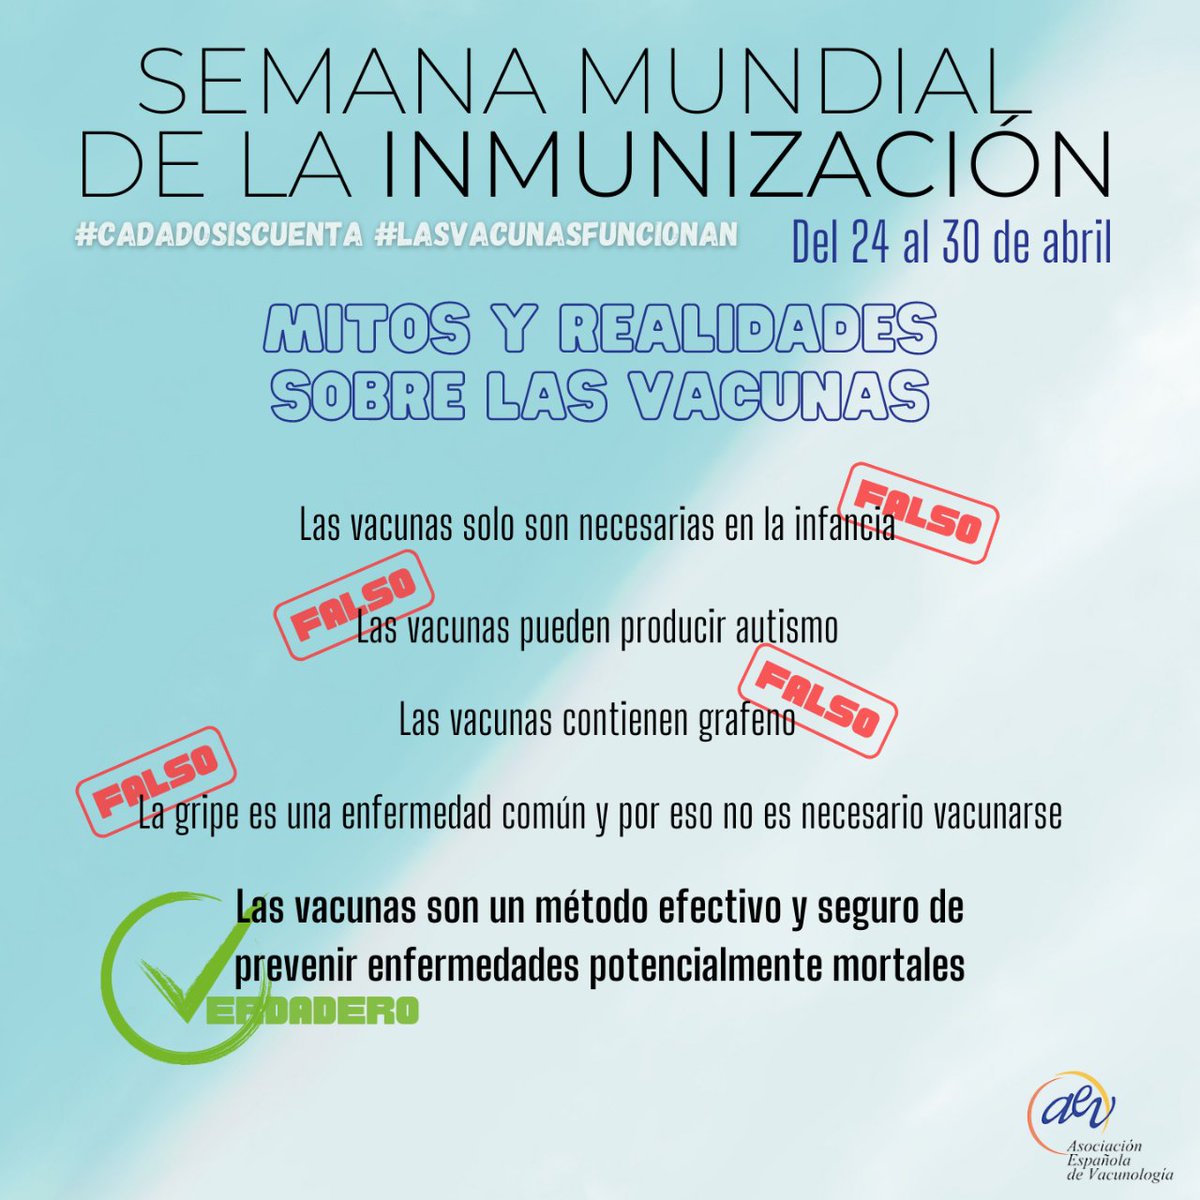 Del 24 al 20 de abril #SemanadelaInmunizacion  Las vacunas salvan vidas!! Tienen beneficios individuales y colectivos. vacunasaep.org/profesionales/…).